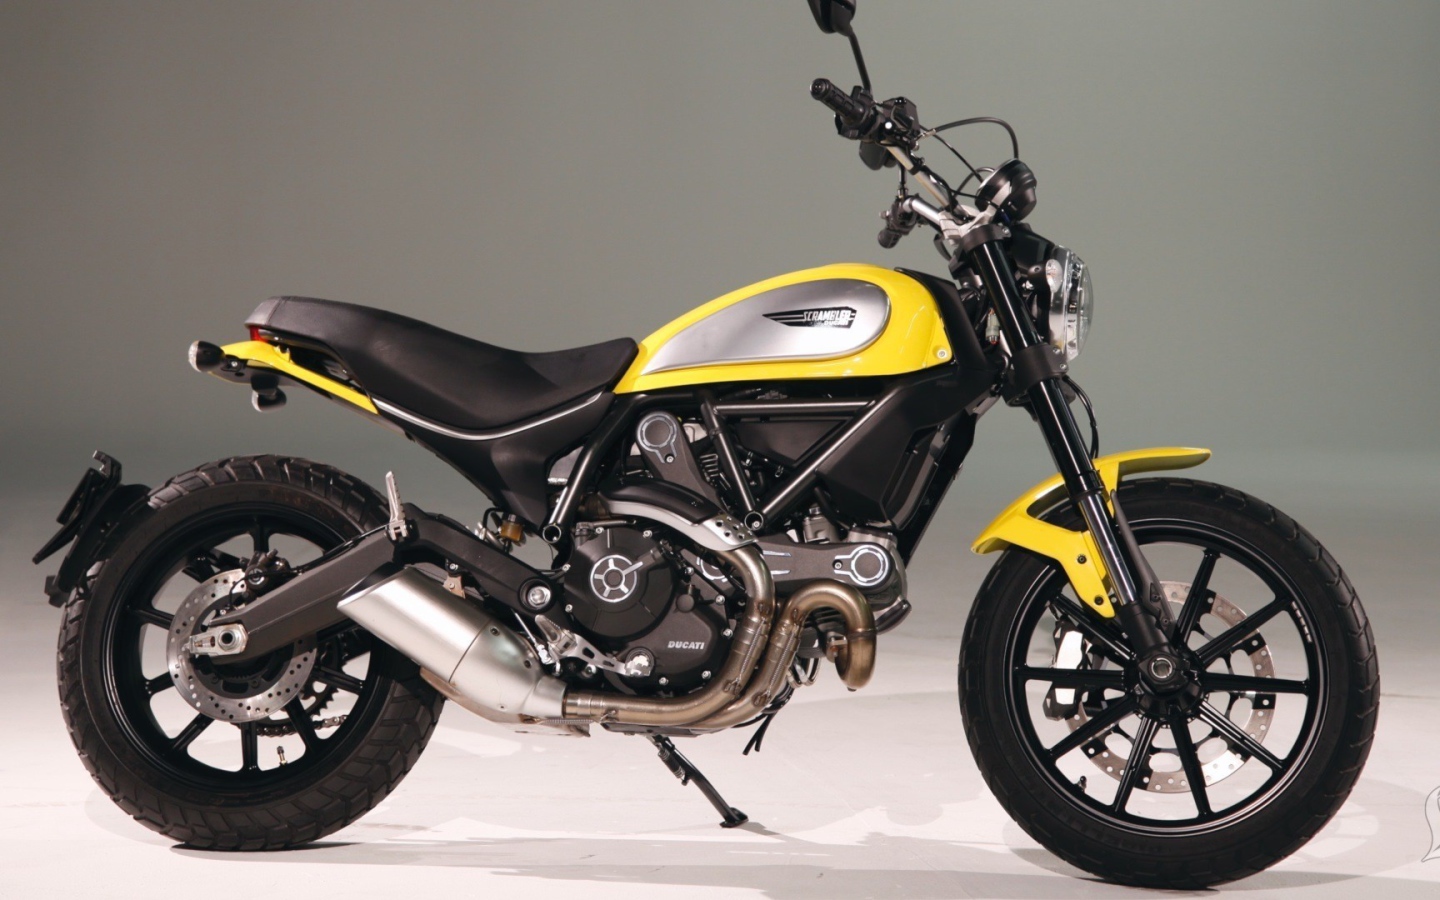 Черно желтый мотоцикл Дукати Скремблер